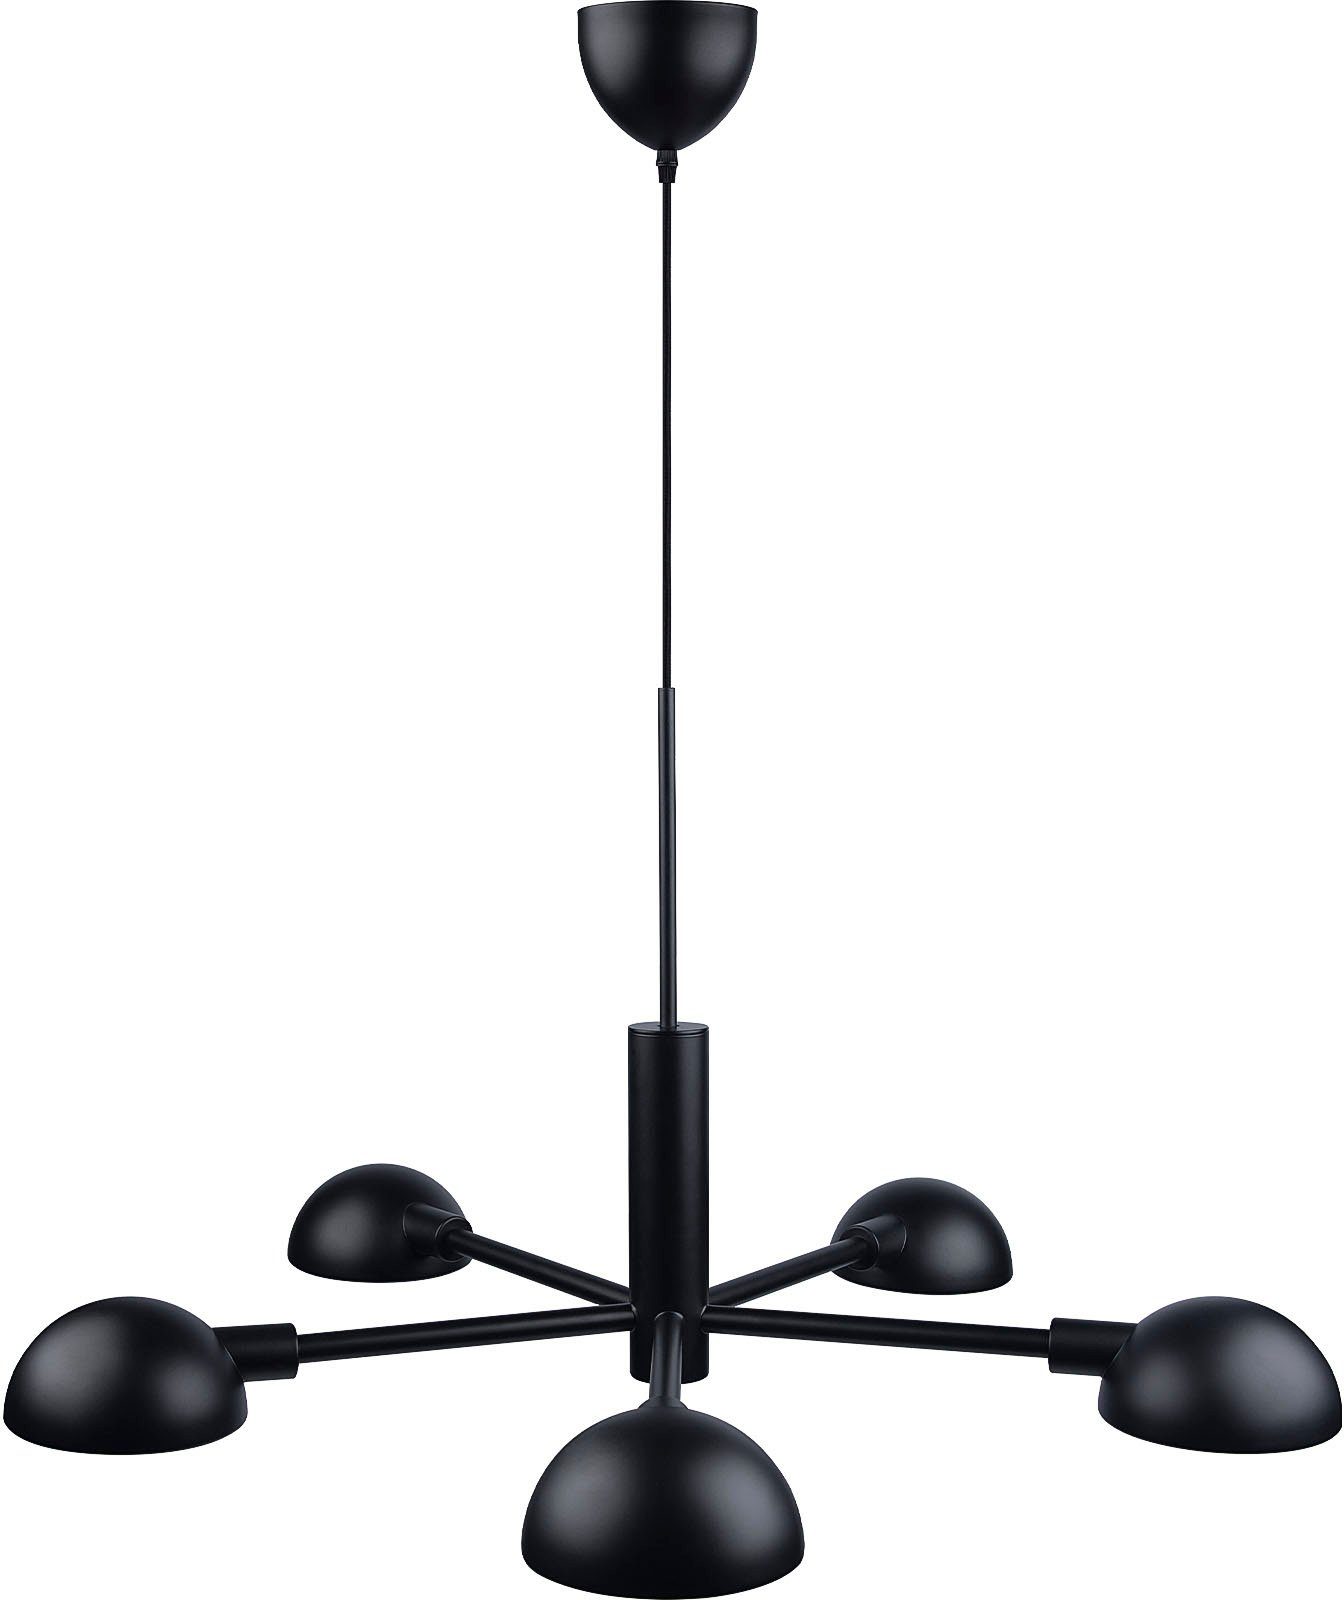 Minimalistisches for design Perfekt Pendelleuchte runden Tisch the Leuchtmittel, Design, Nomi, einem people ohne über